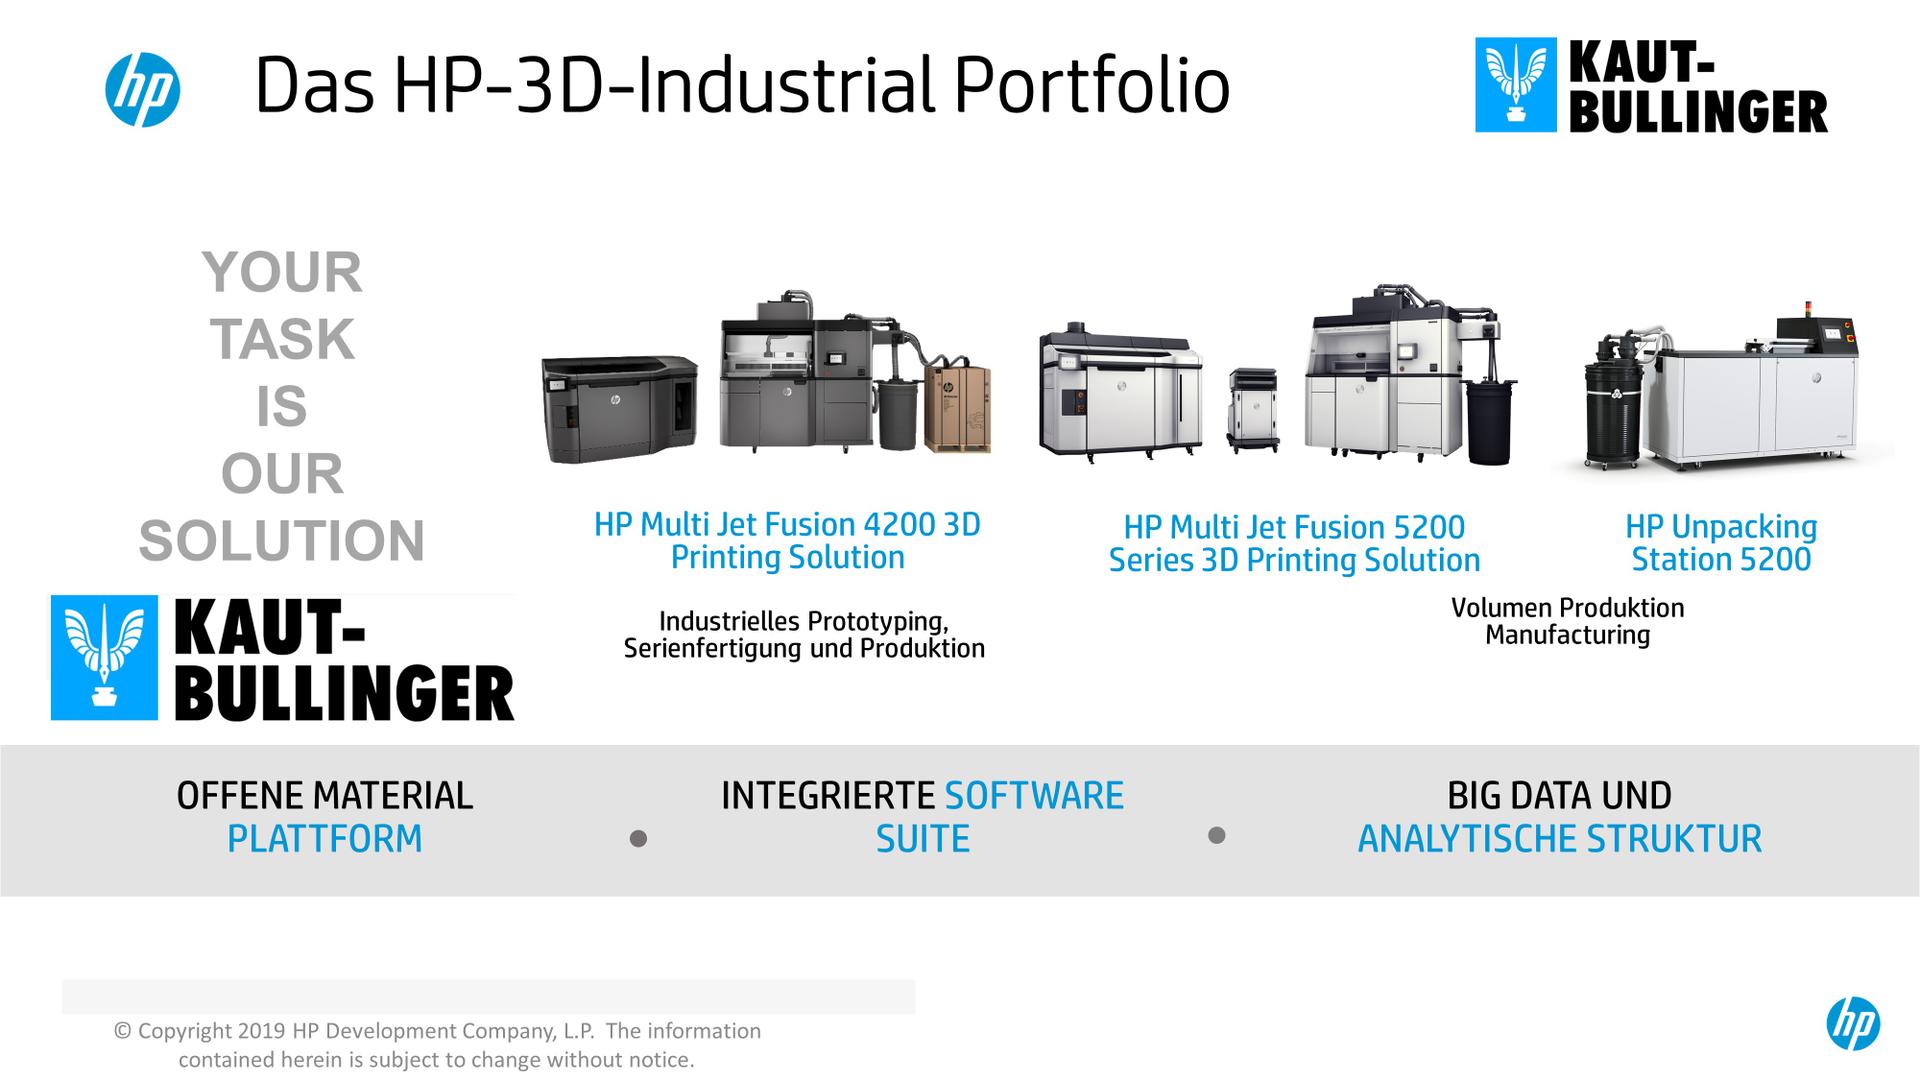 HP_3D_Druck HP_3D_Portfolio HP_3D_Drucker Portfolio How_to_choose